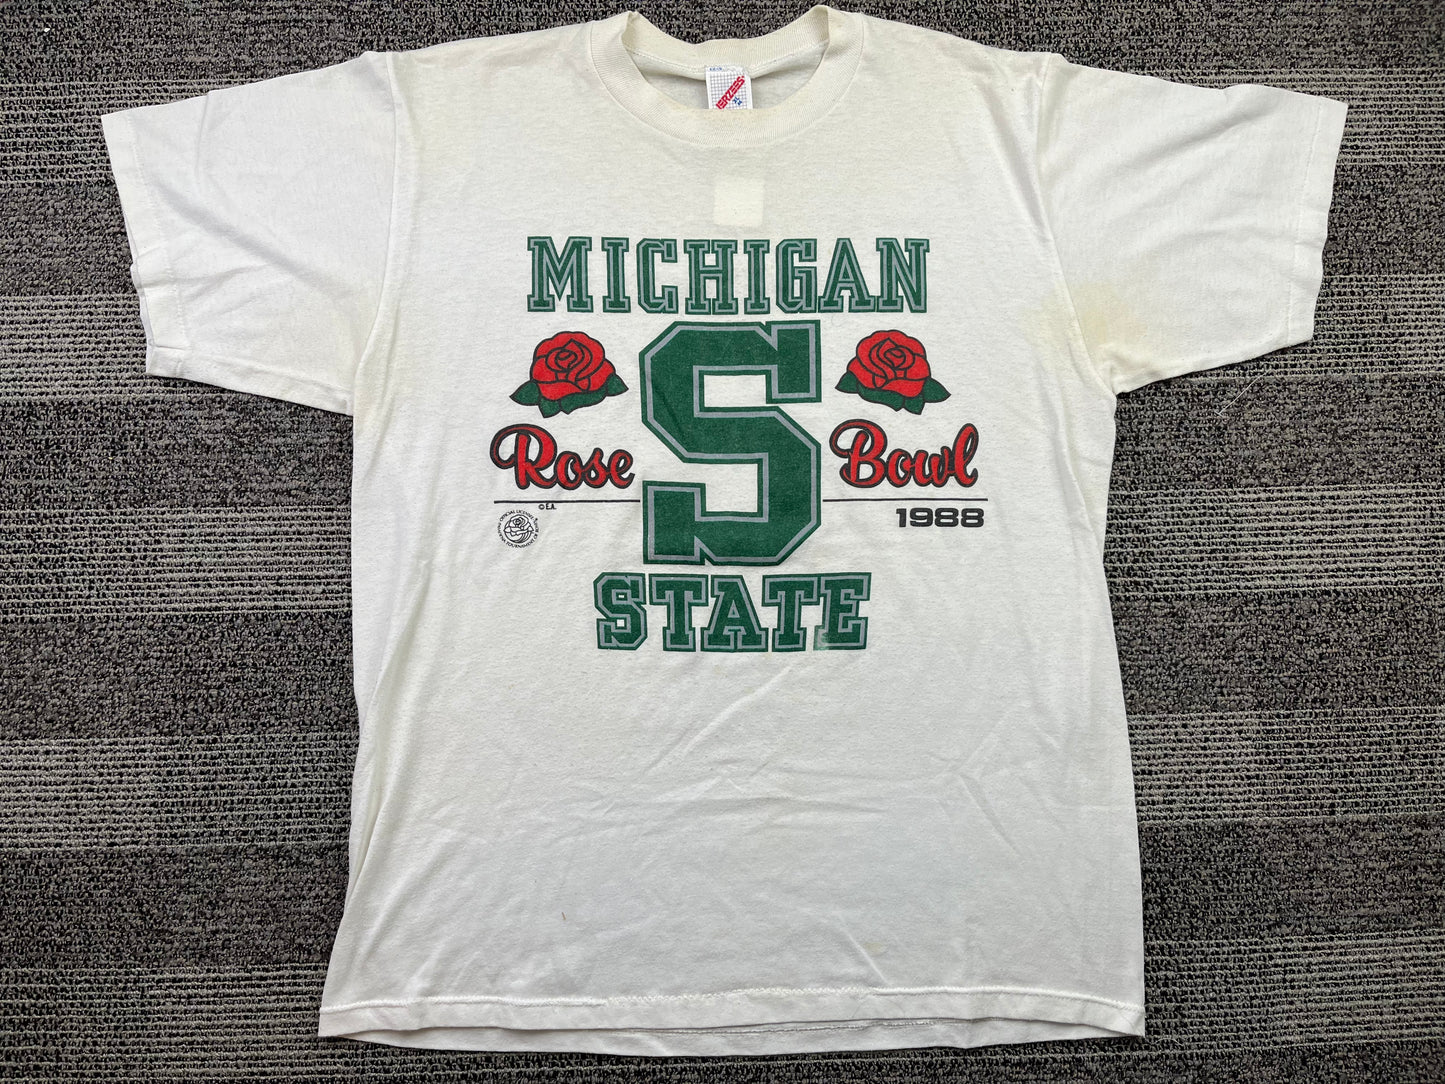 Michigan state 1988 Rose Bowl T-Shirt